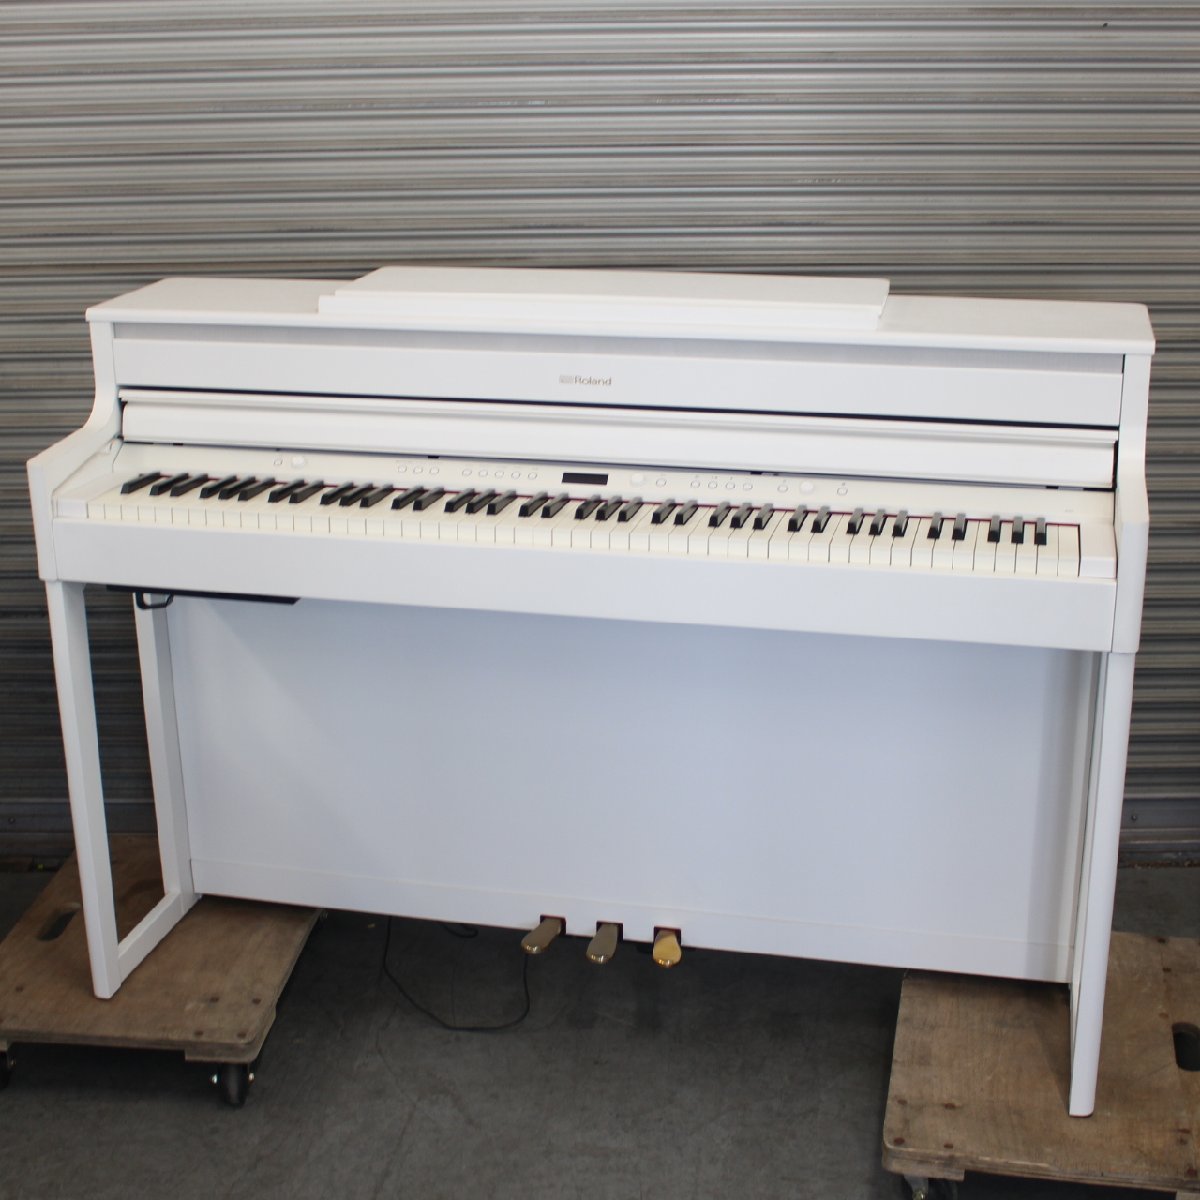 東京都世田谷区にて ローランド 電子ピアノ HP704 2019年製 を出張買取させて頂きました。